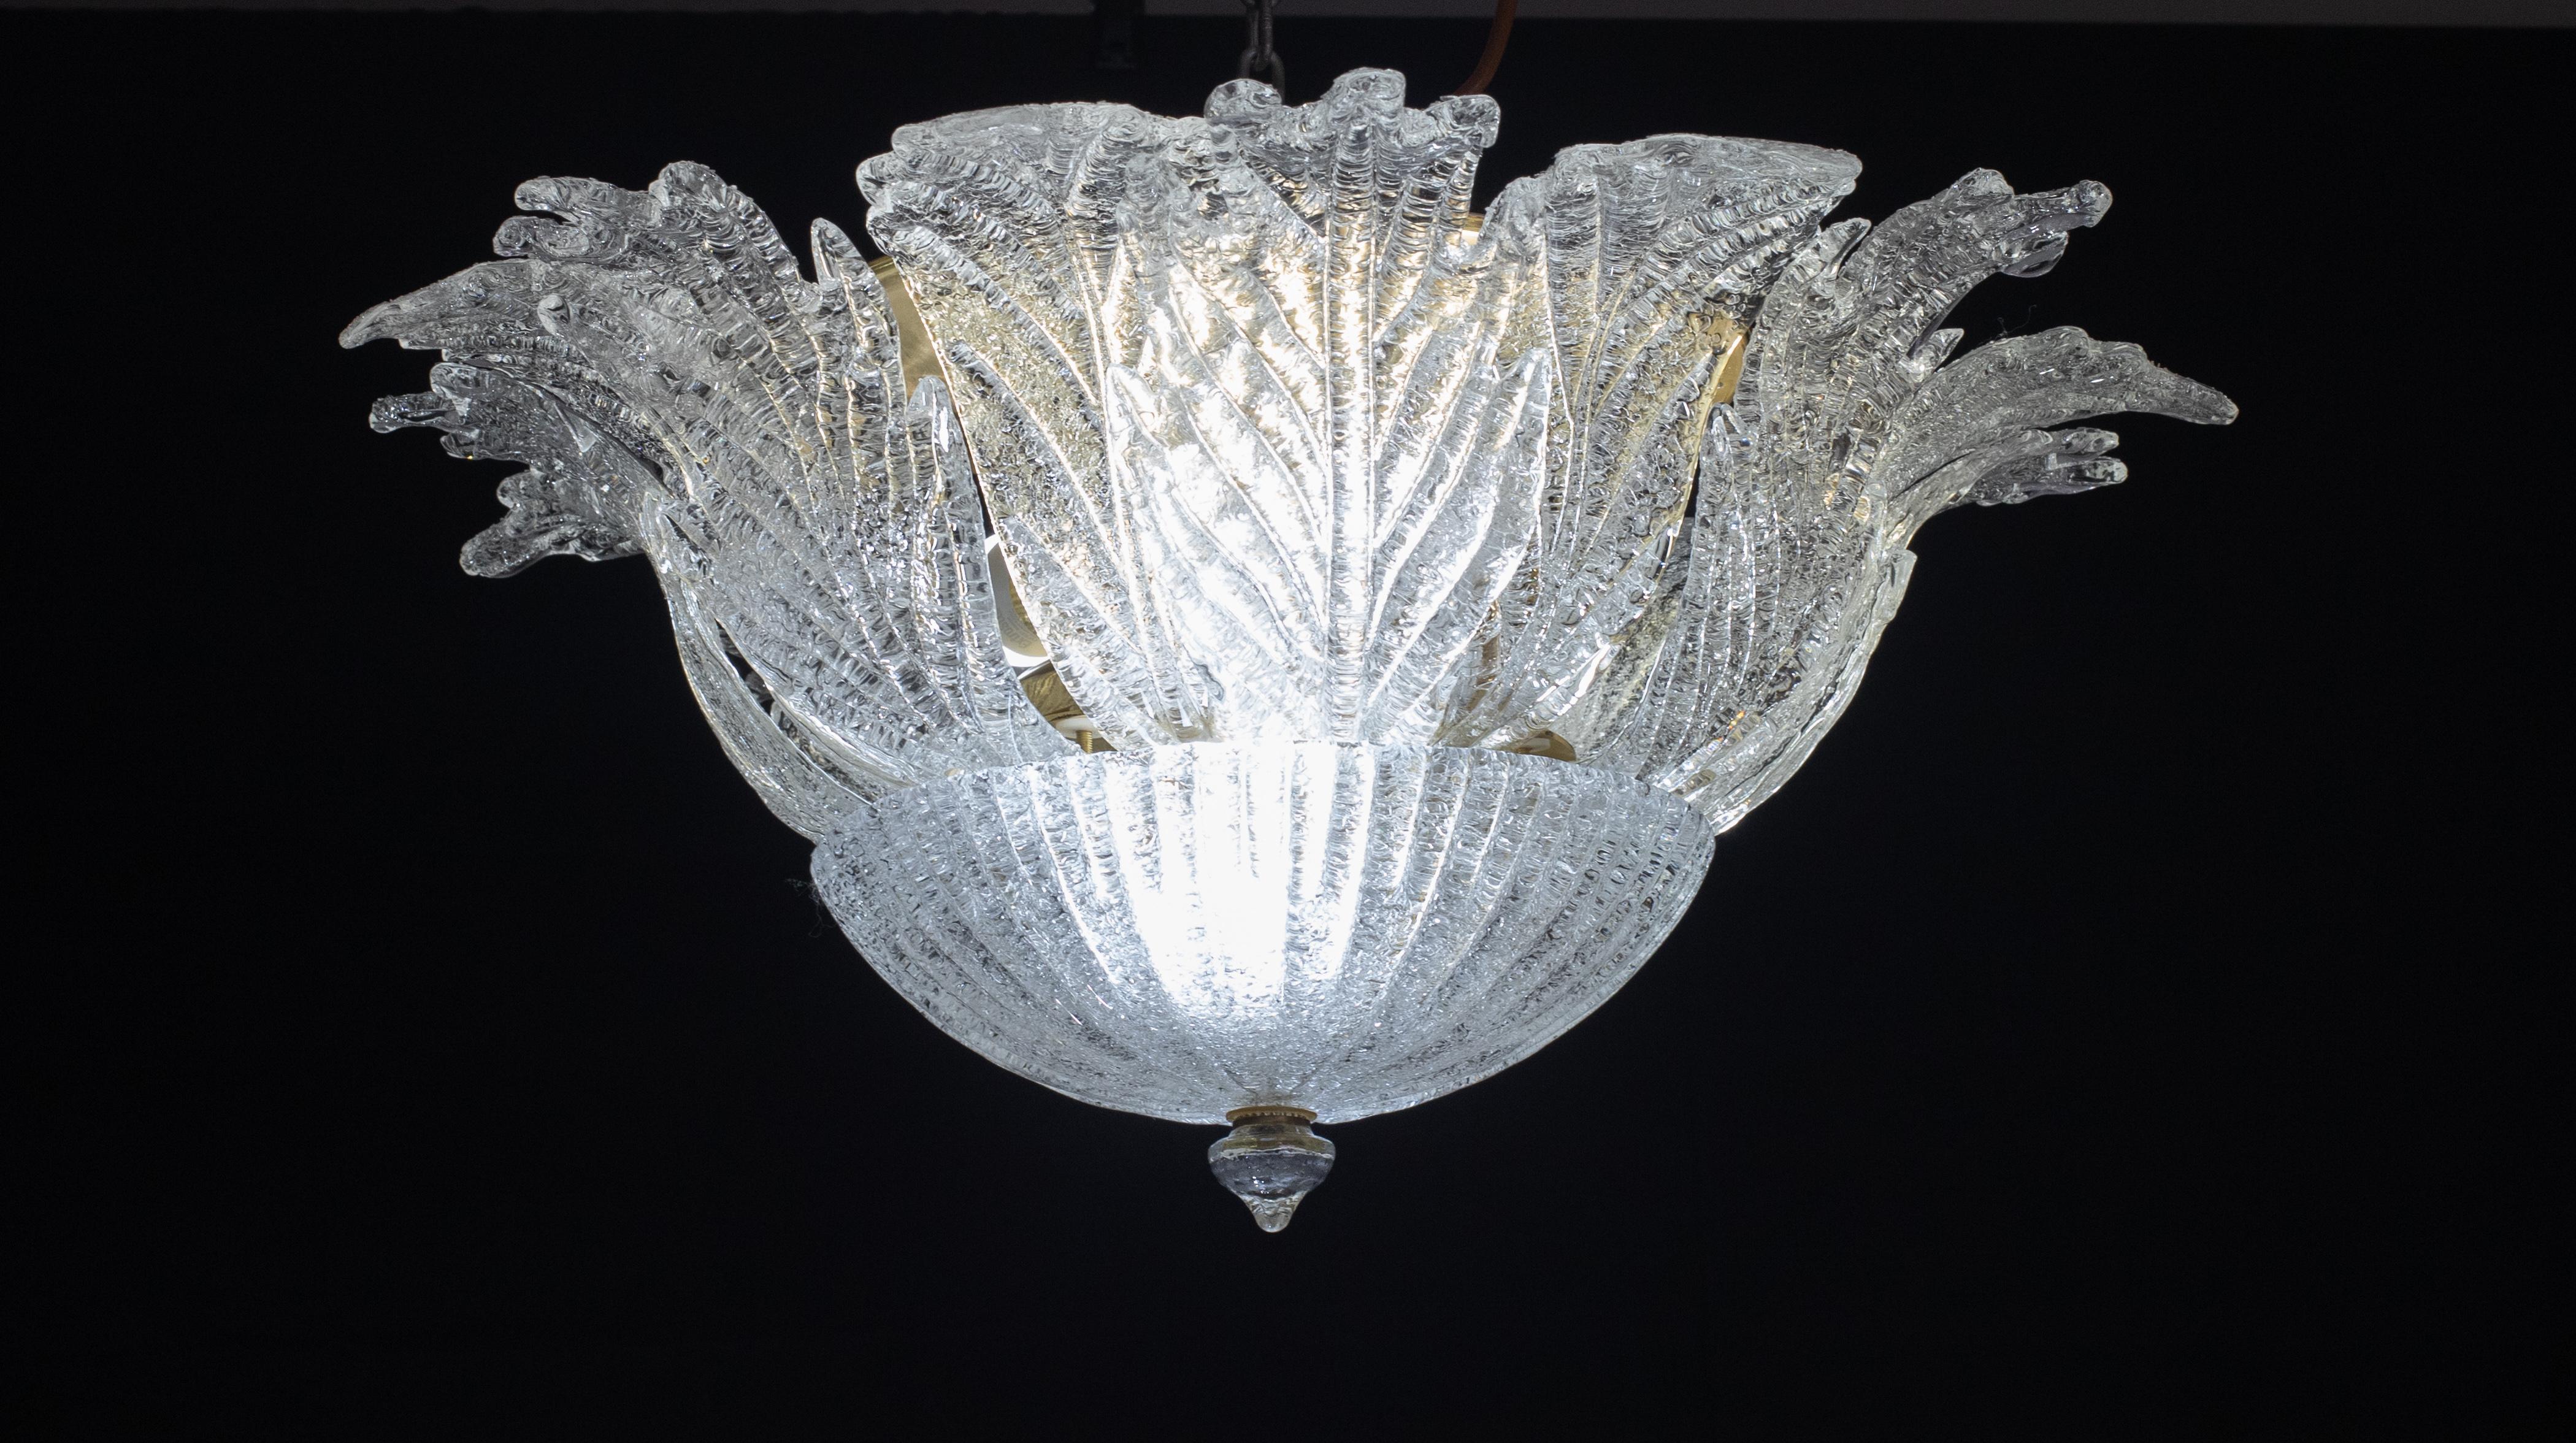 Prächtige Deckenlampe aus Murano-Glas.

Zeitraum: ca. 1970.

Die Deckenleuchte misst 35 cm in der Höhe, der Durchmesser beträgt 67 Zentimeter.

Es werden 5 Lampen montiert, 3 e27, 2 e14

Perfekt für die Dekoration eines großen Raumes.